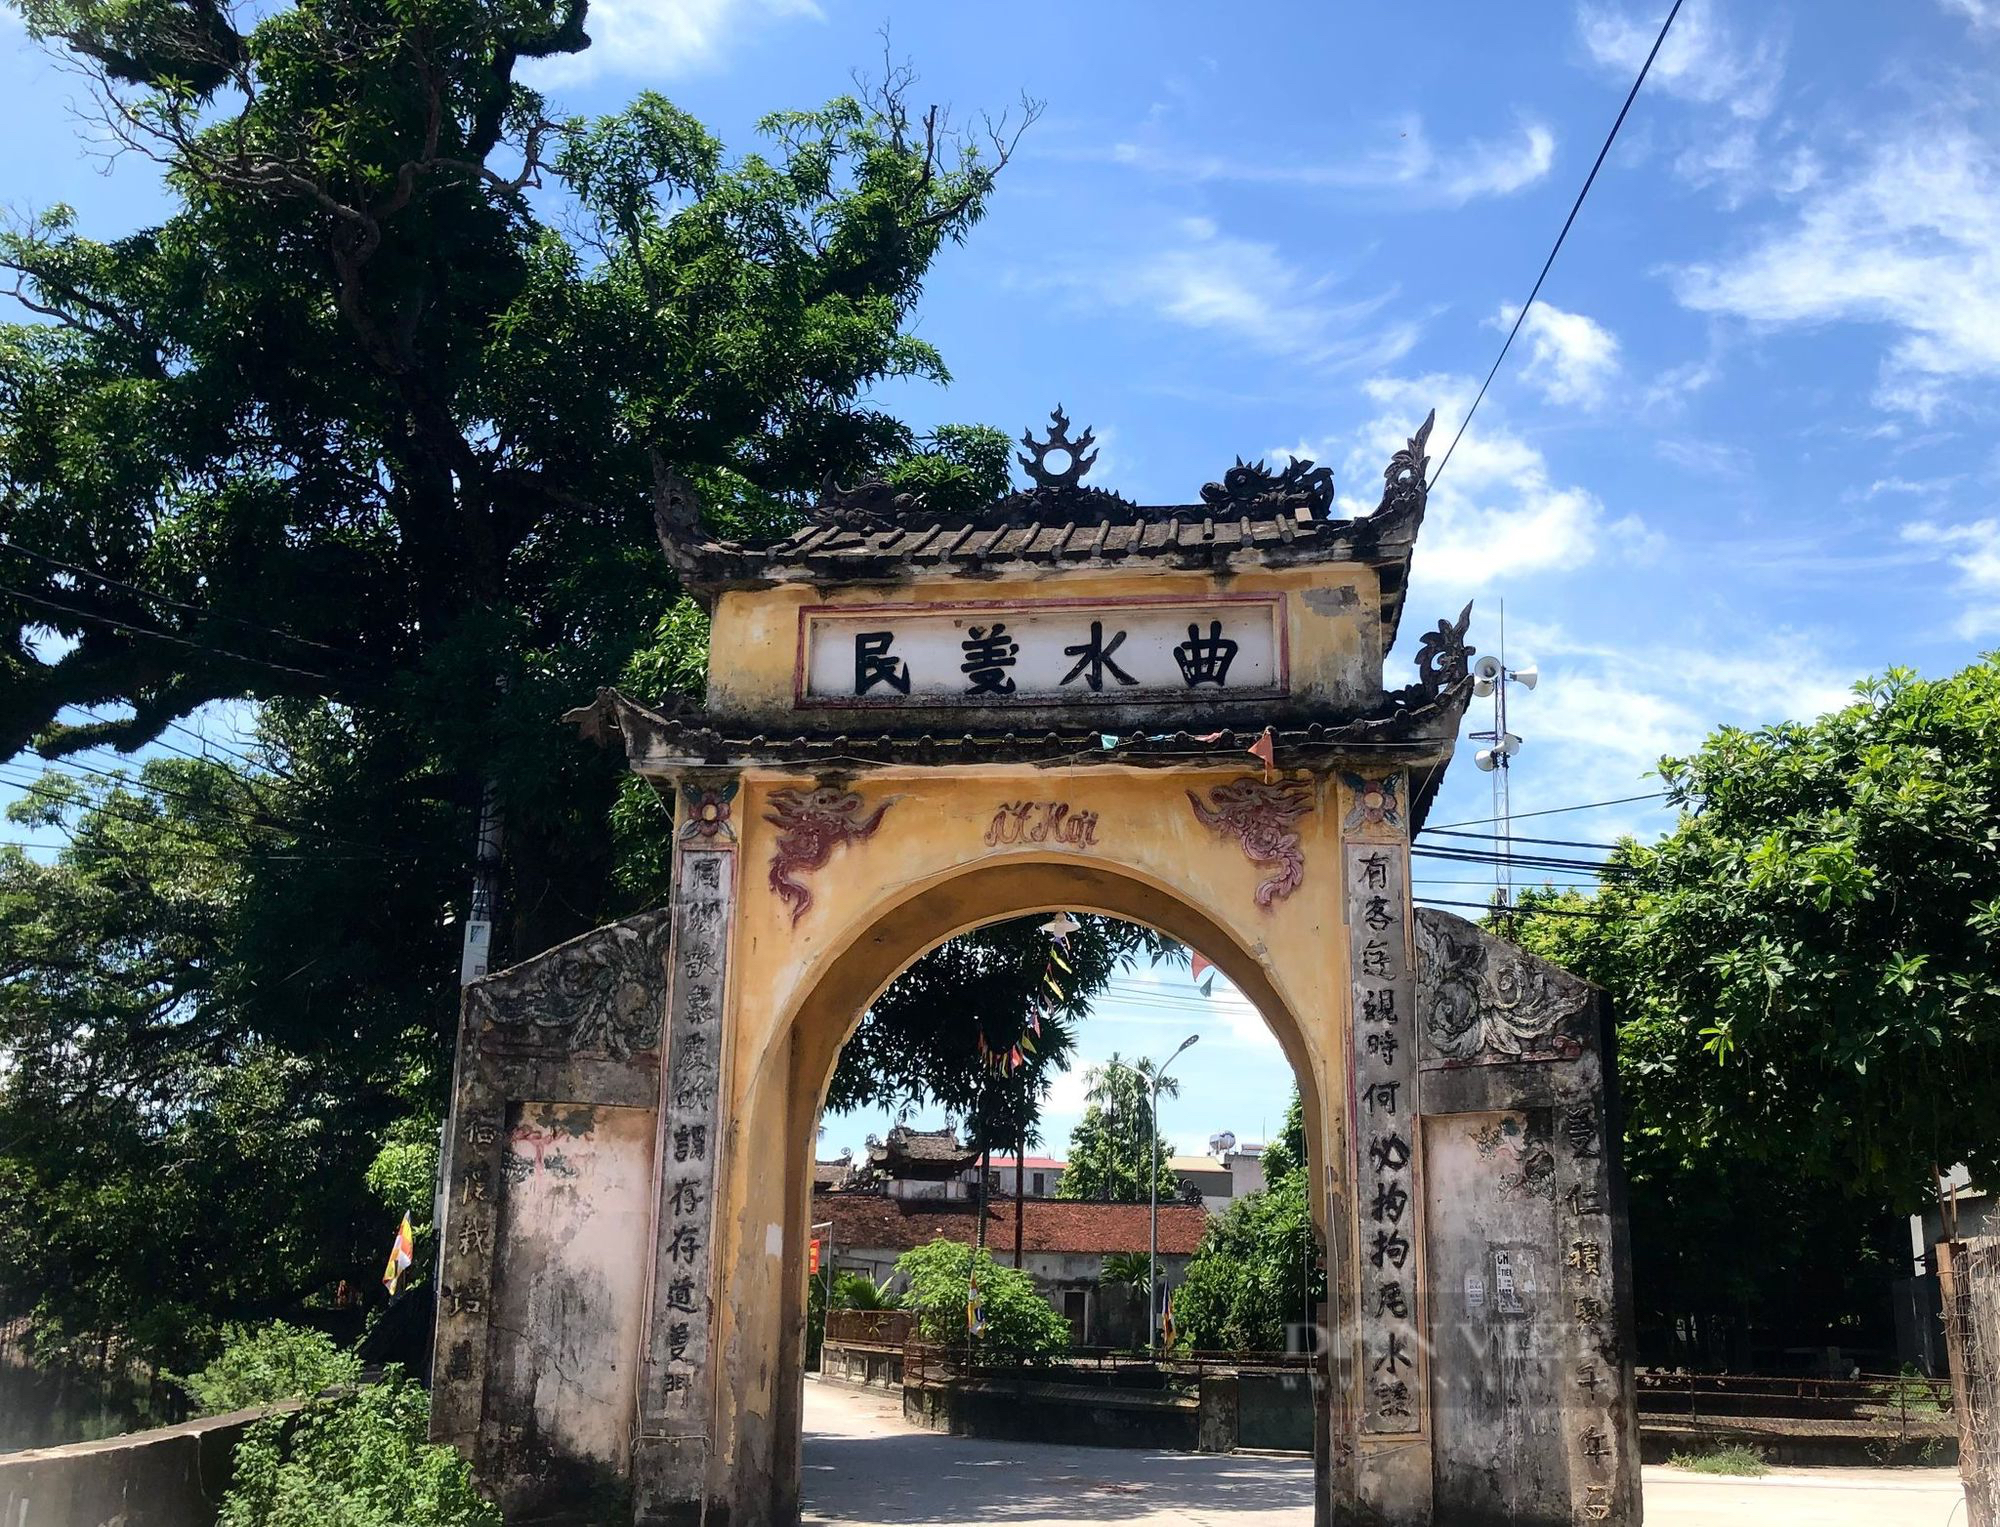 Độc đáo ngôi làng lưu giữ nhiều cổng cổ hàng trăm năm tuổi ở ngoại thành Hà Nội - Ảnh 2.